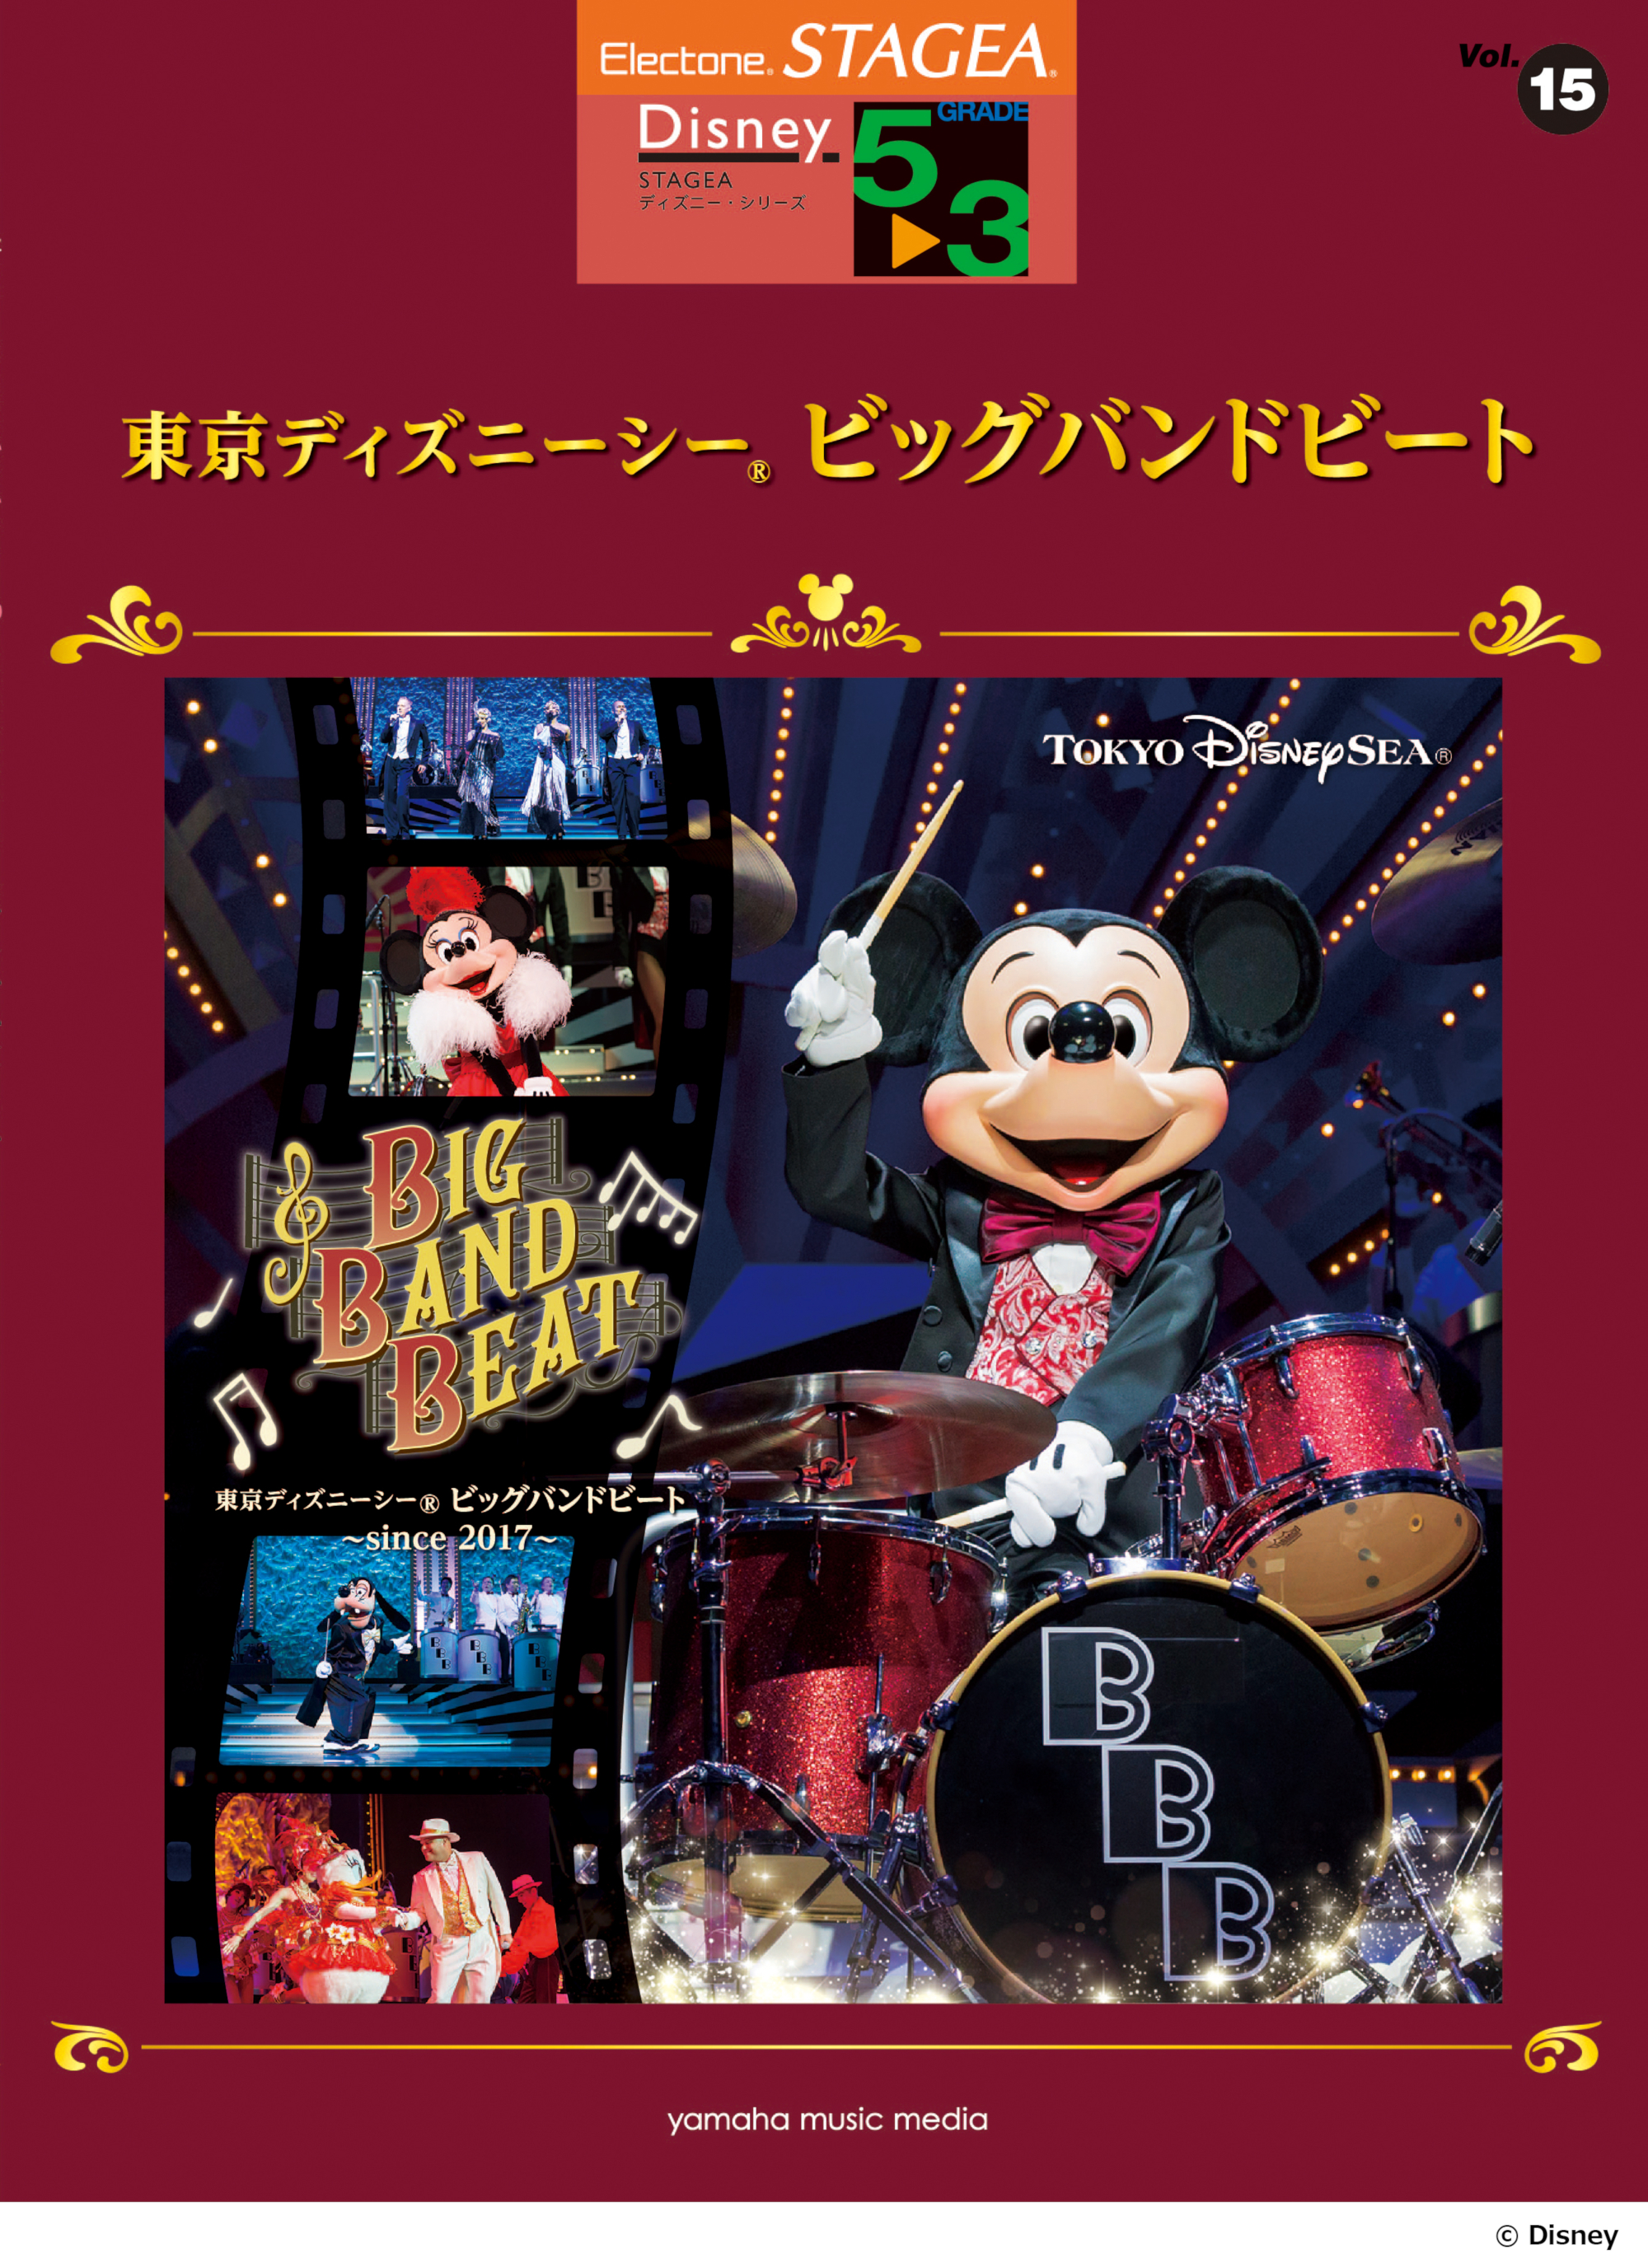 大人気のショーの雰囲気をご堪能ください Stagea ディズニー 5 3級 Vol 15 東京ディズニーシー R ビッグバンドビート 2月23日発売 ヤマハミュージックエンタテインメントホールディングスのプレスリリース